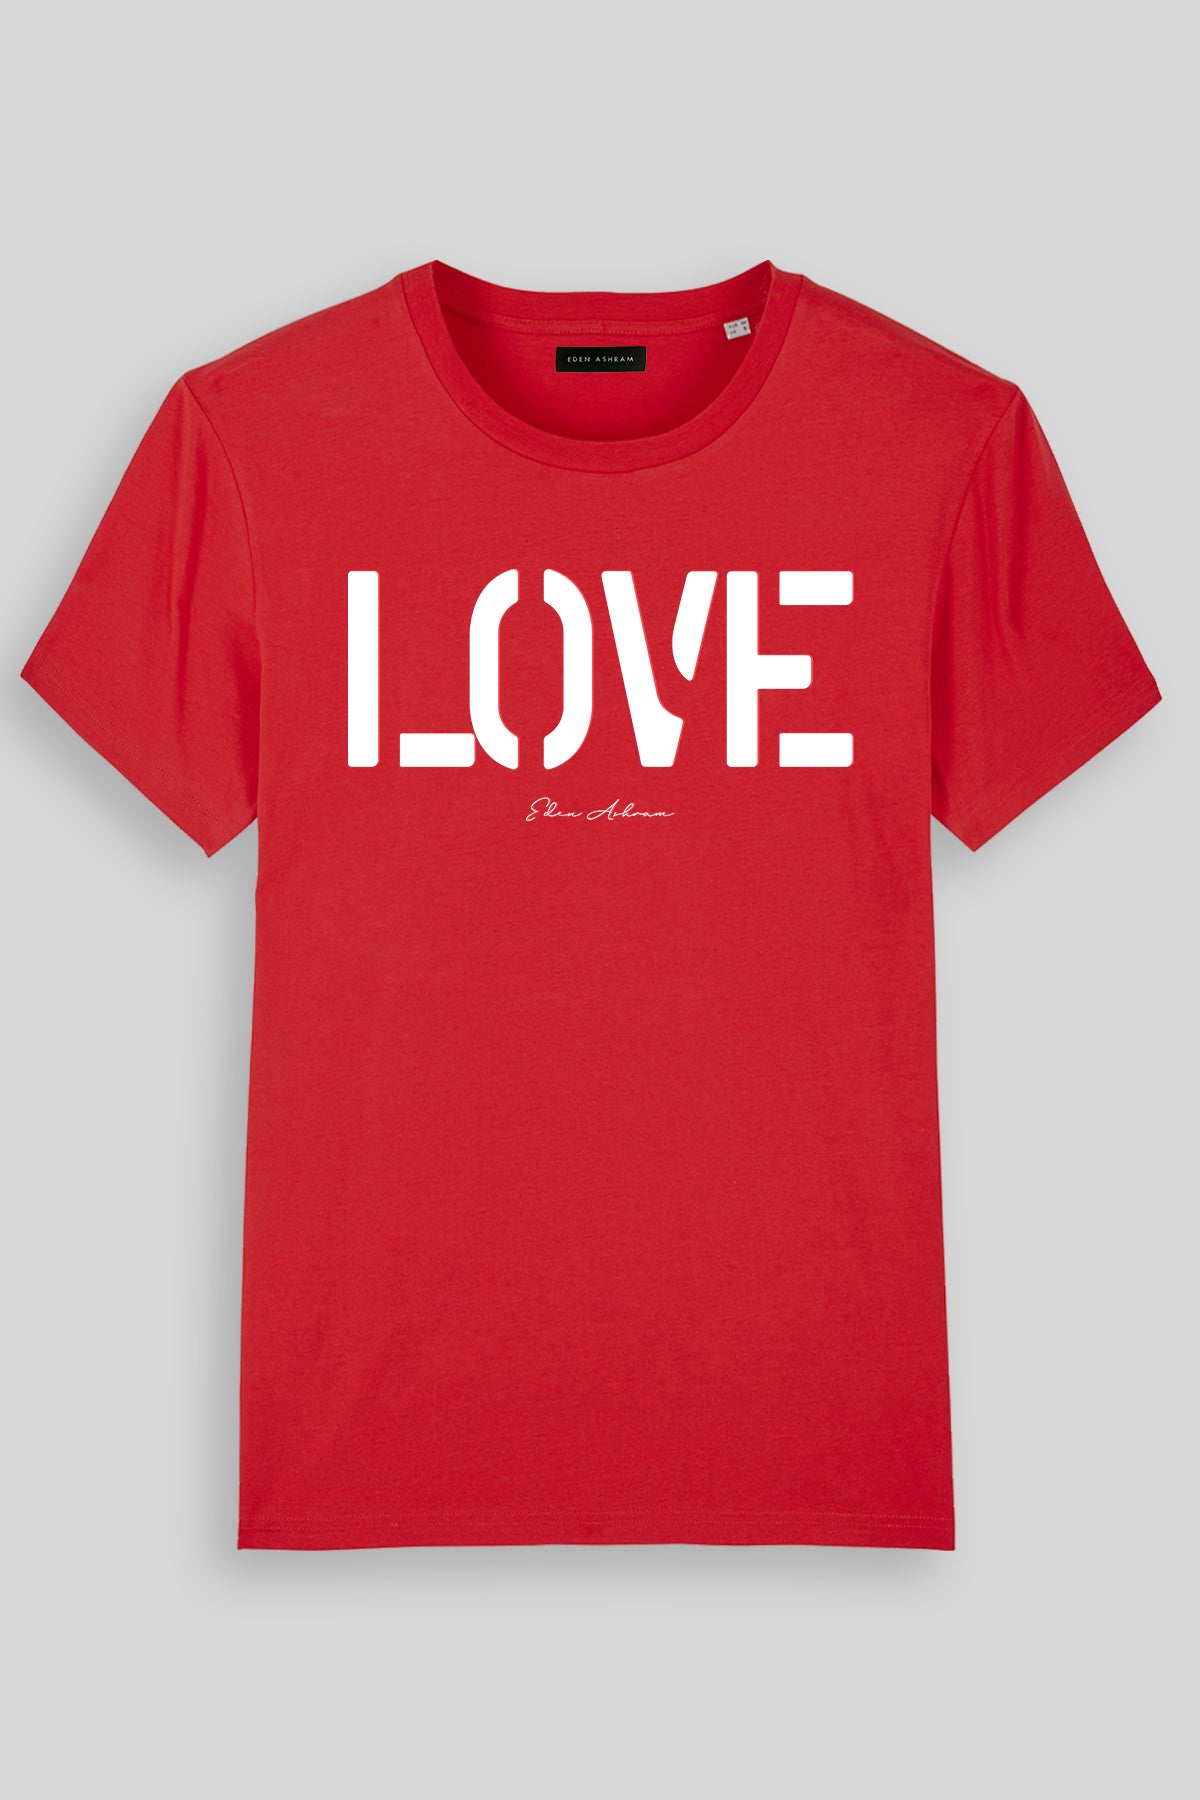 EDEN ASHRAM LOVE Premium Classic T-Shirt Red